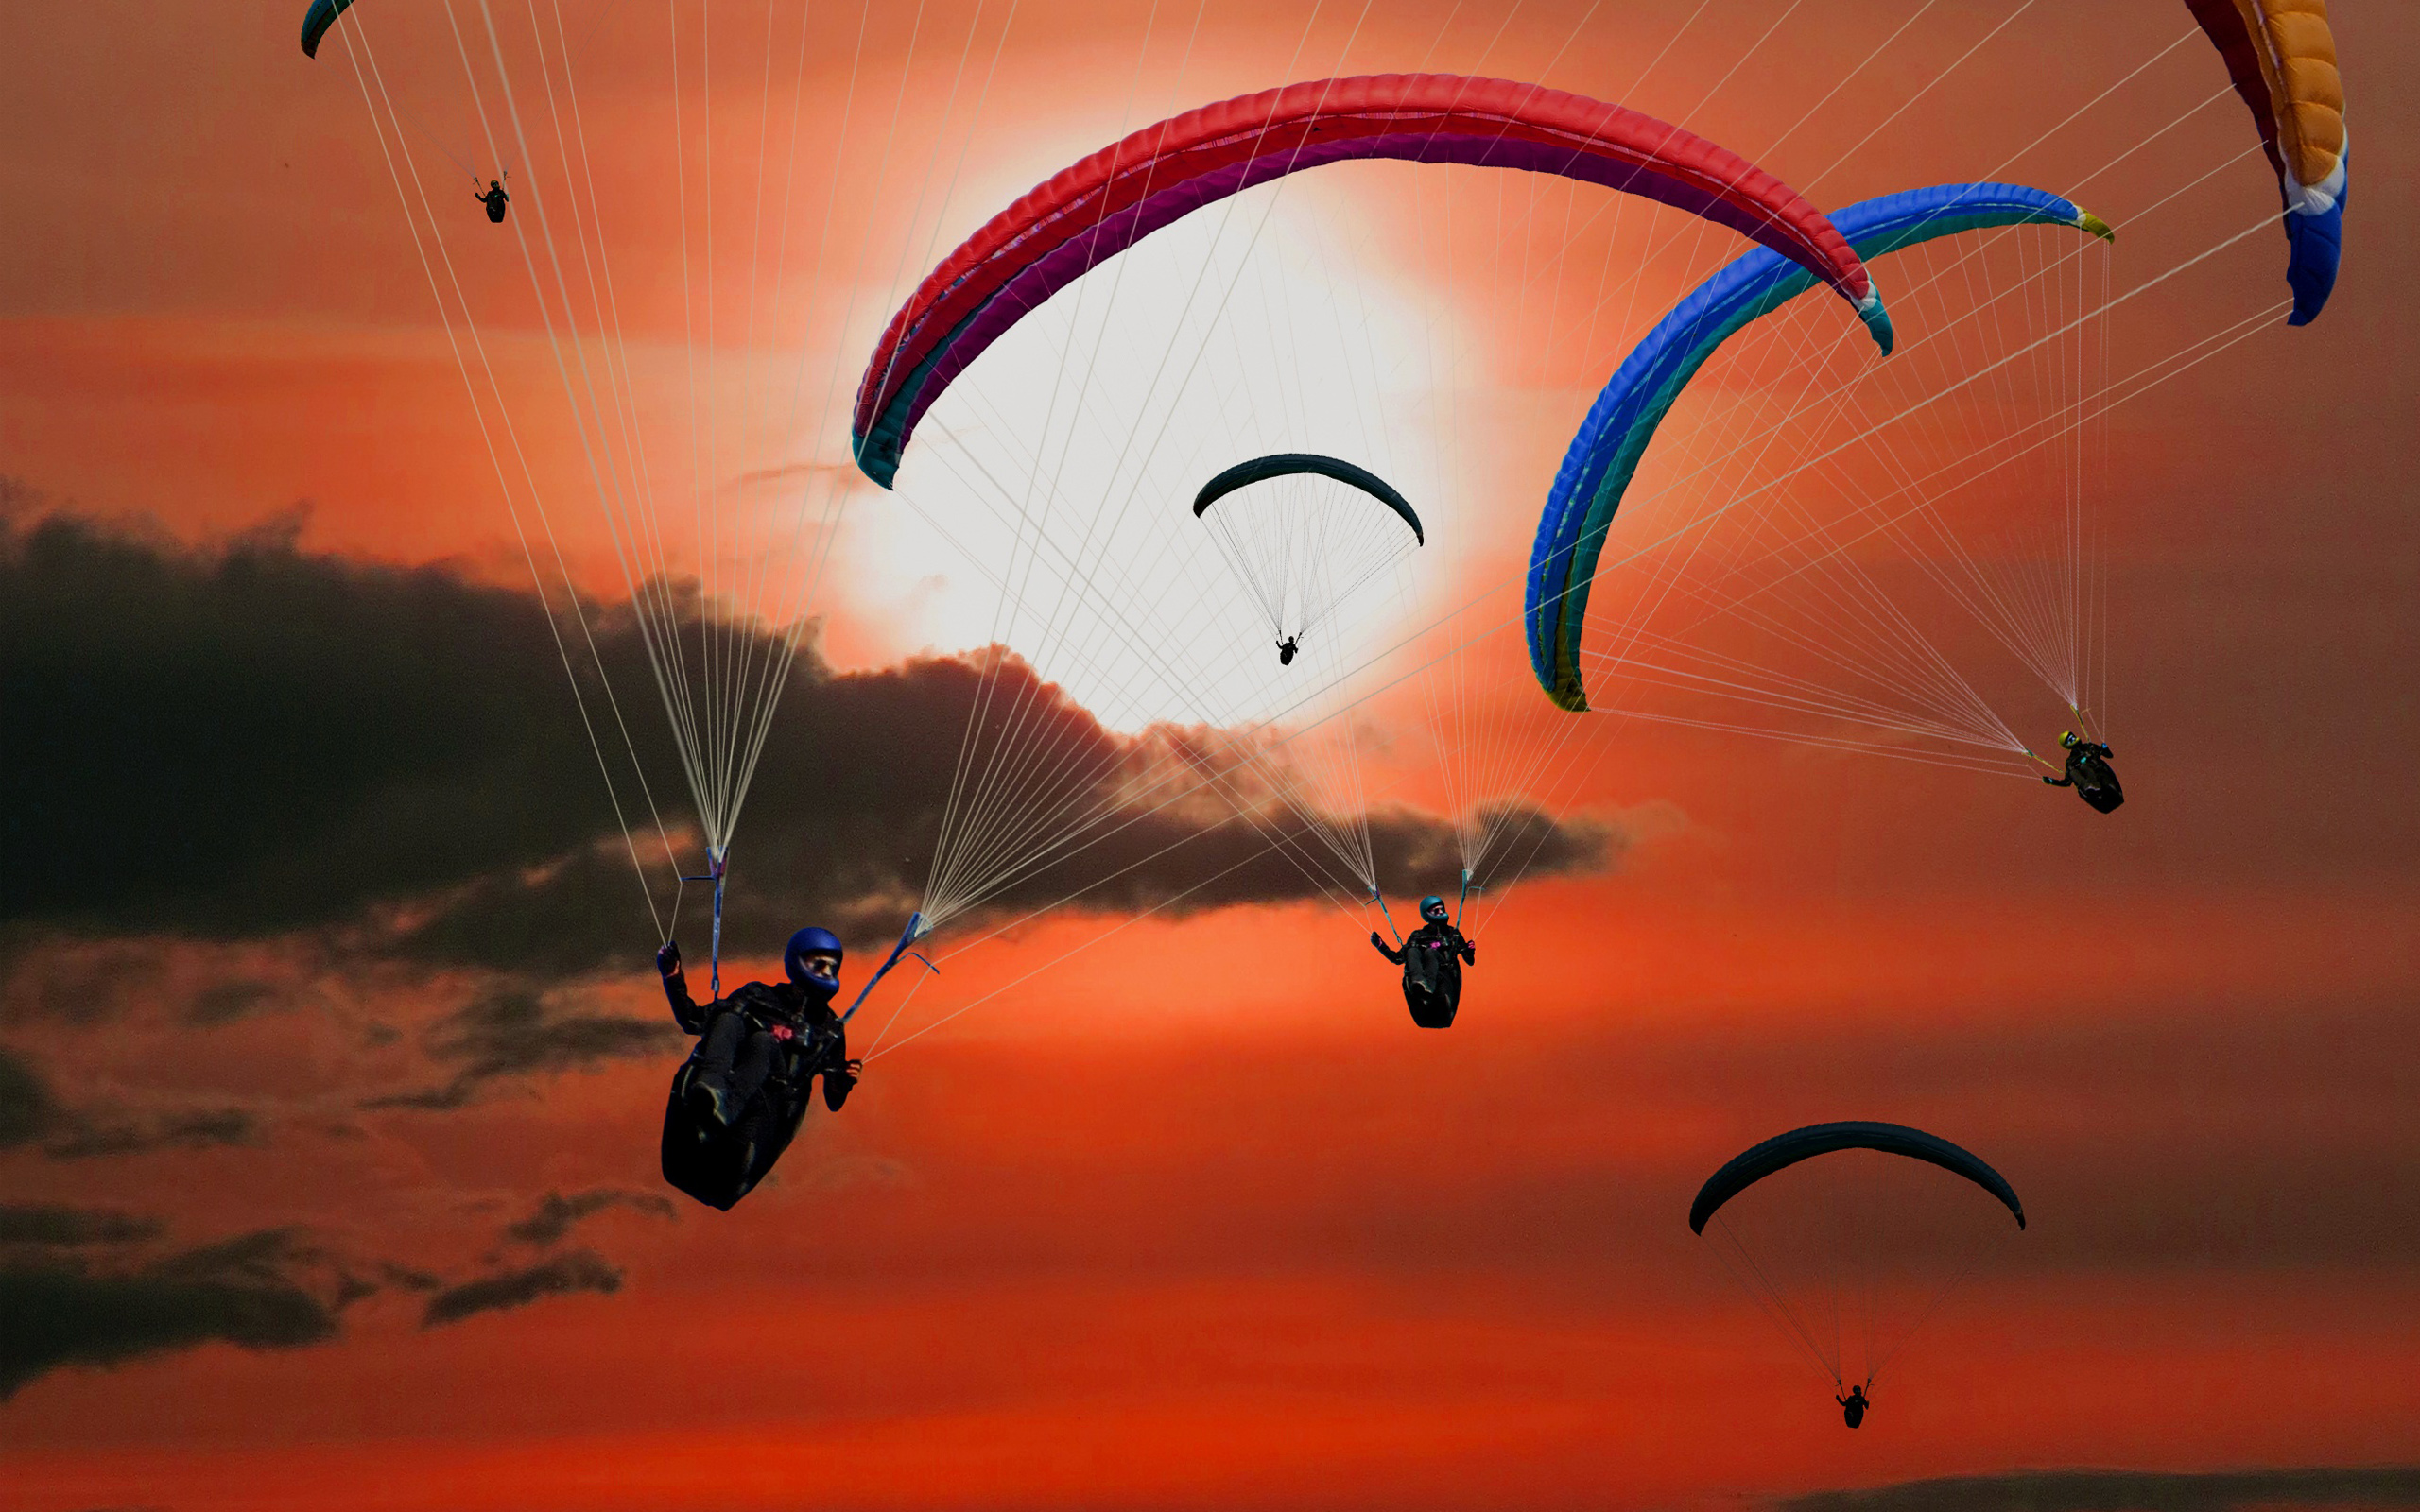 Paragliders2245814651 - Paragliders - Paragliders, Earth